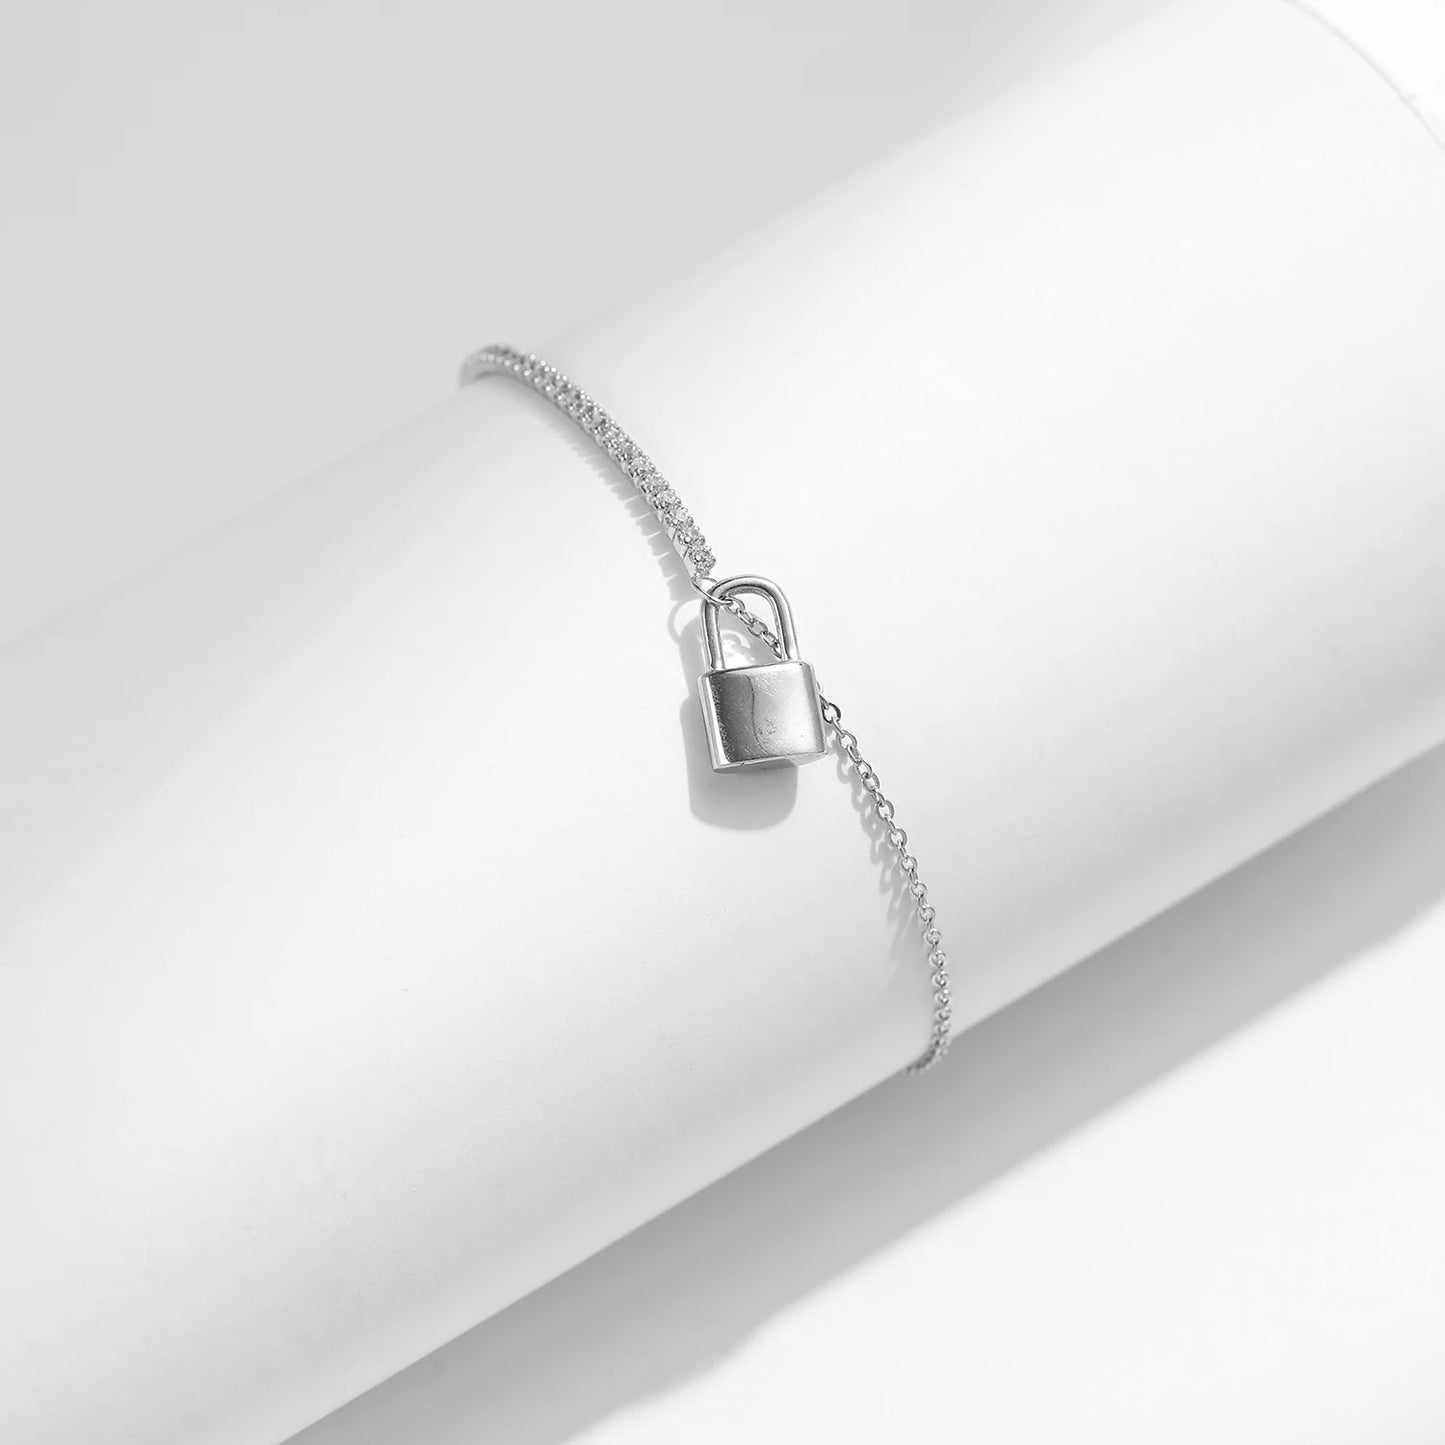 MQ Bracelet 925 Silver For Women Gifts